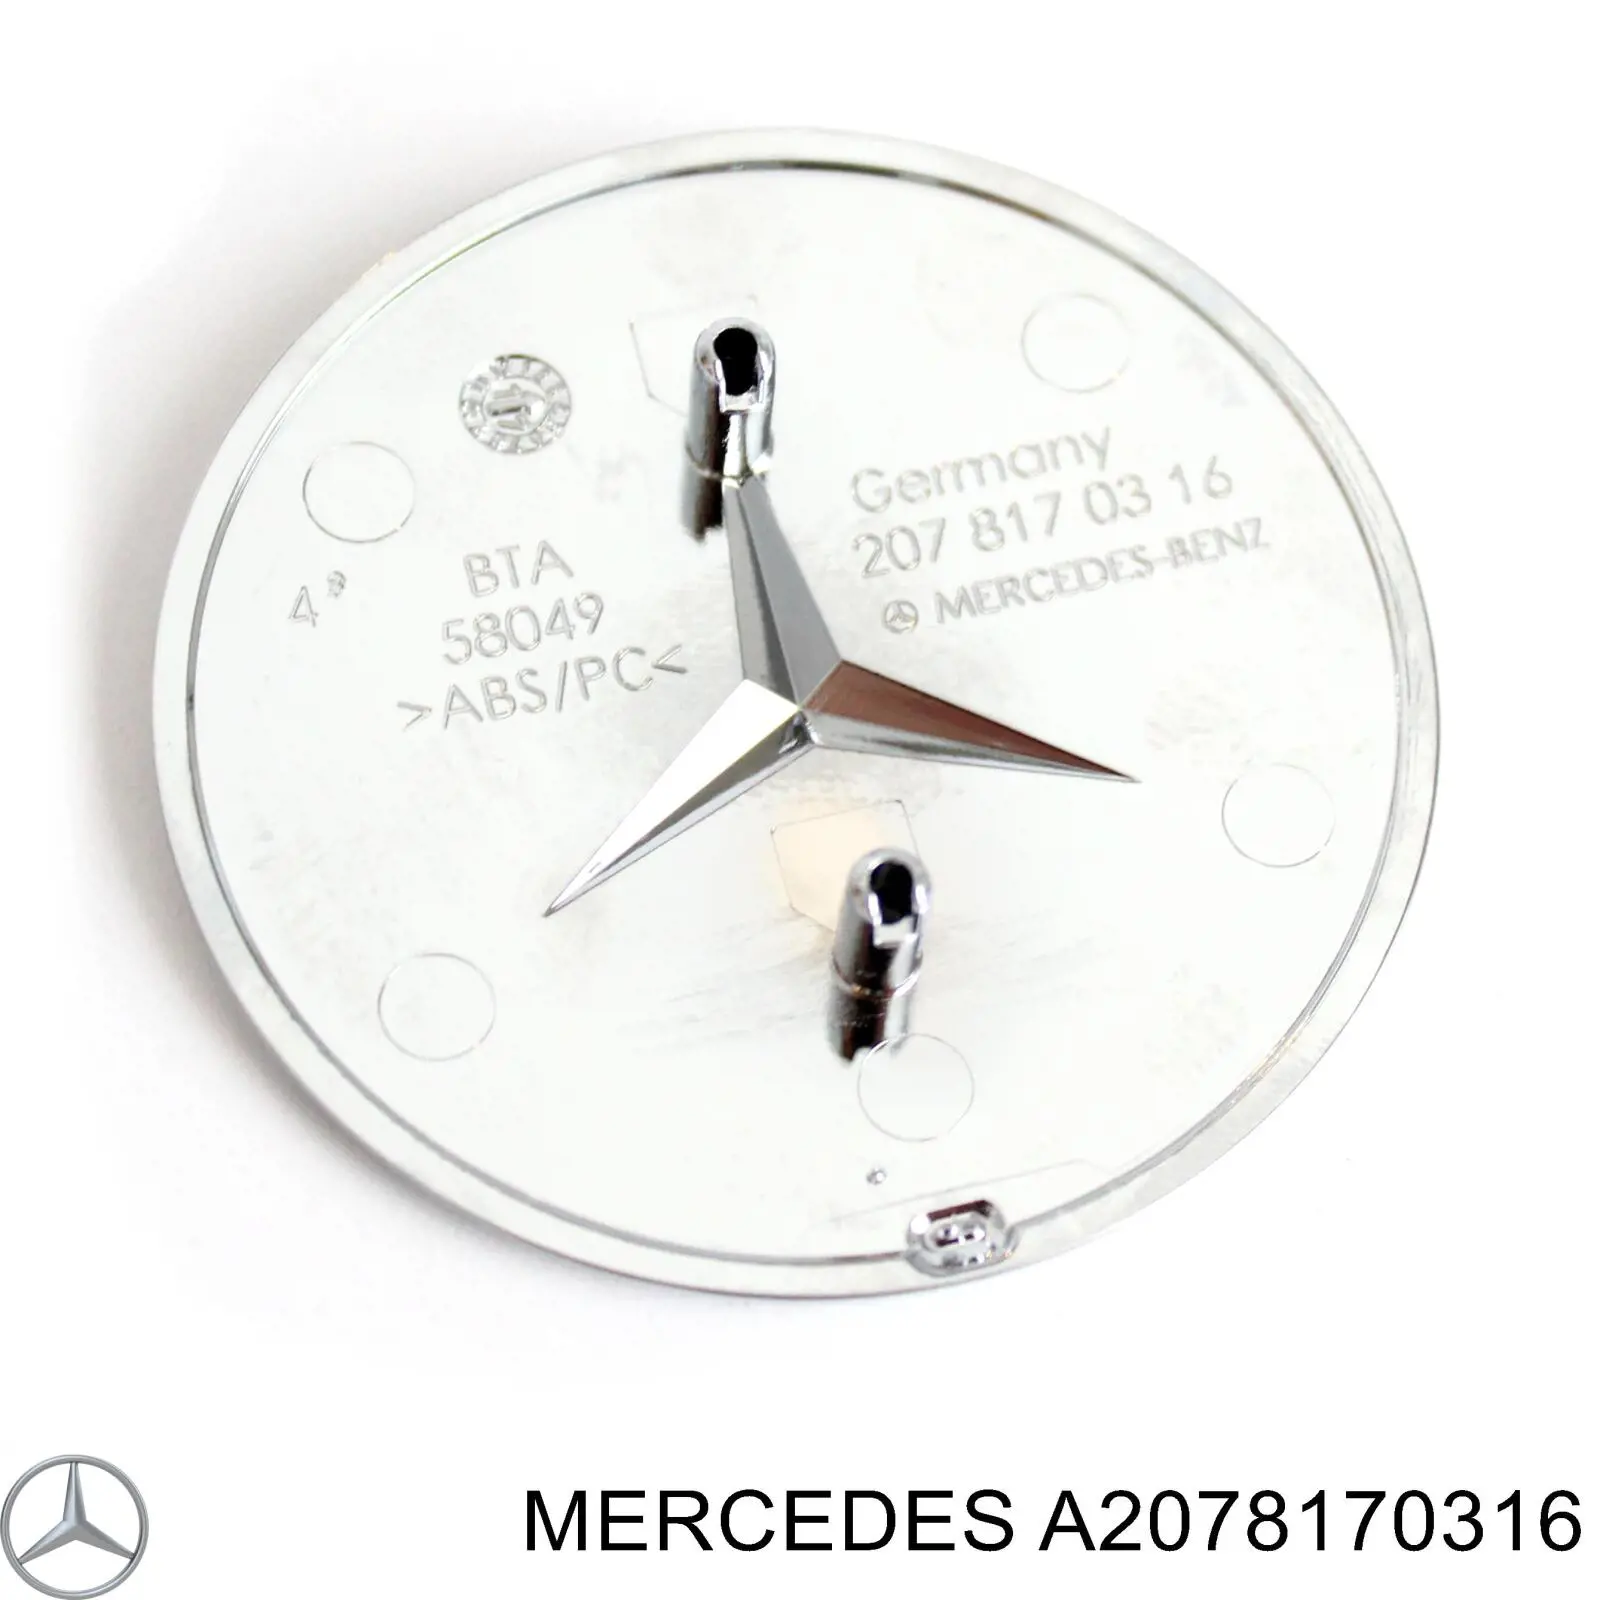 A2078170316 Mercedes emblema de capó